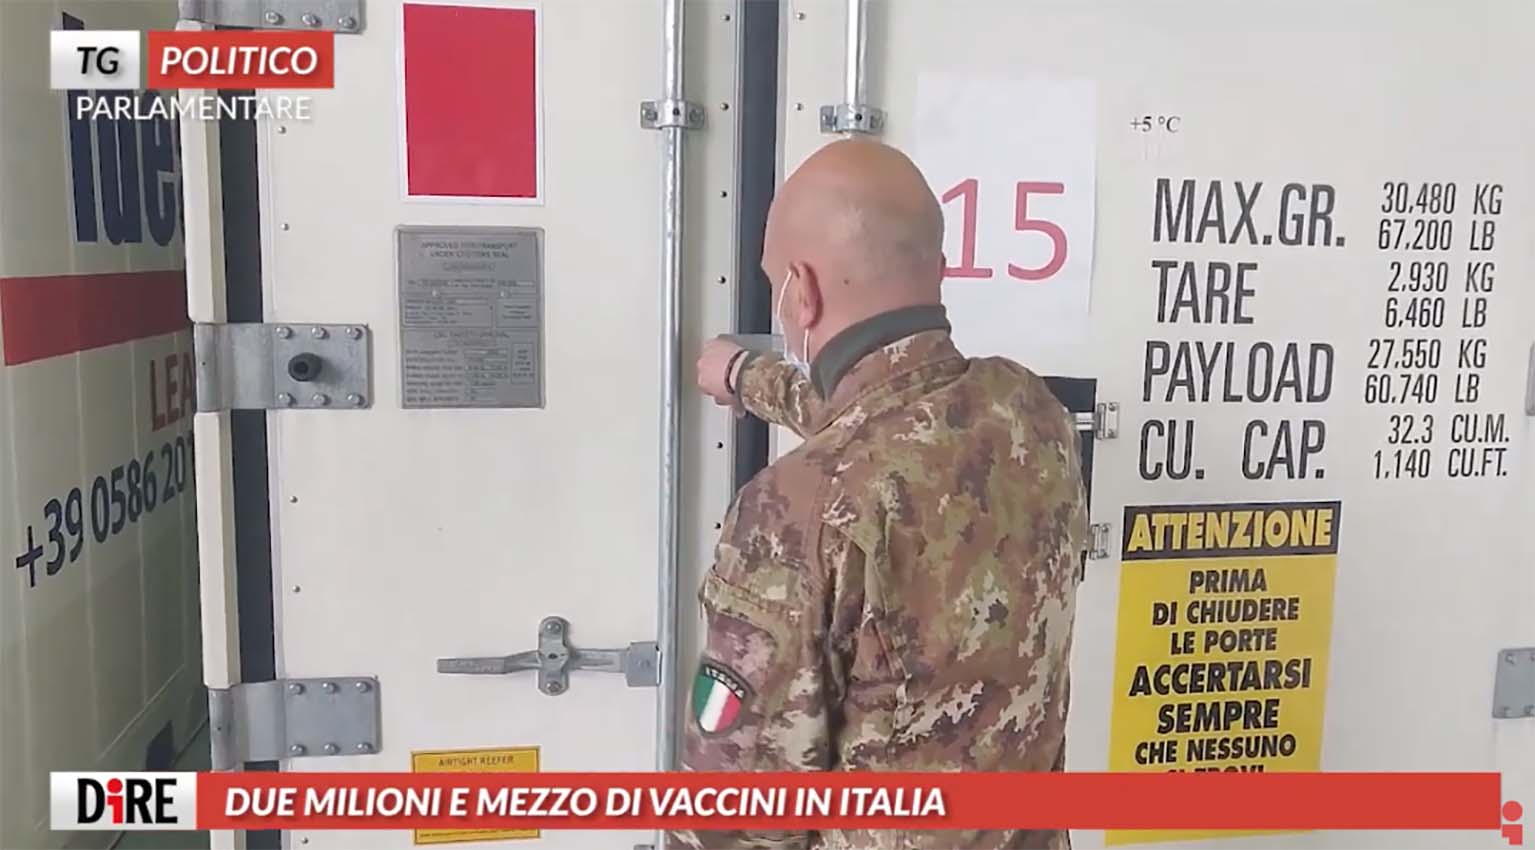 Tg Politico Parlamentare, arrivati 2,5 milioni di vaccini in Italia